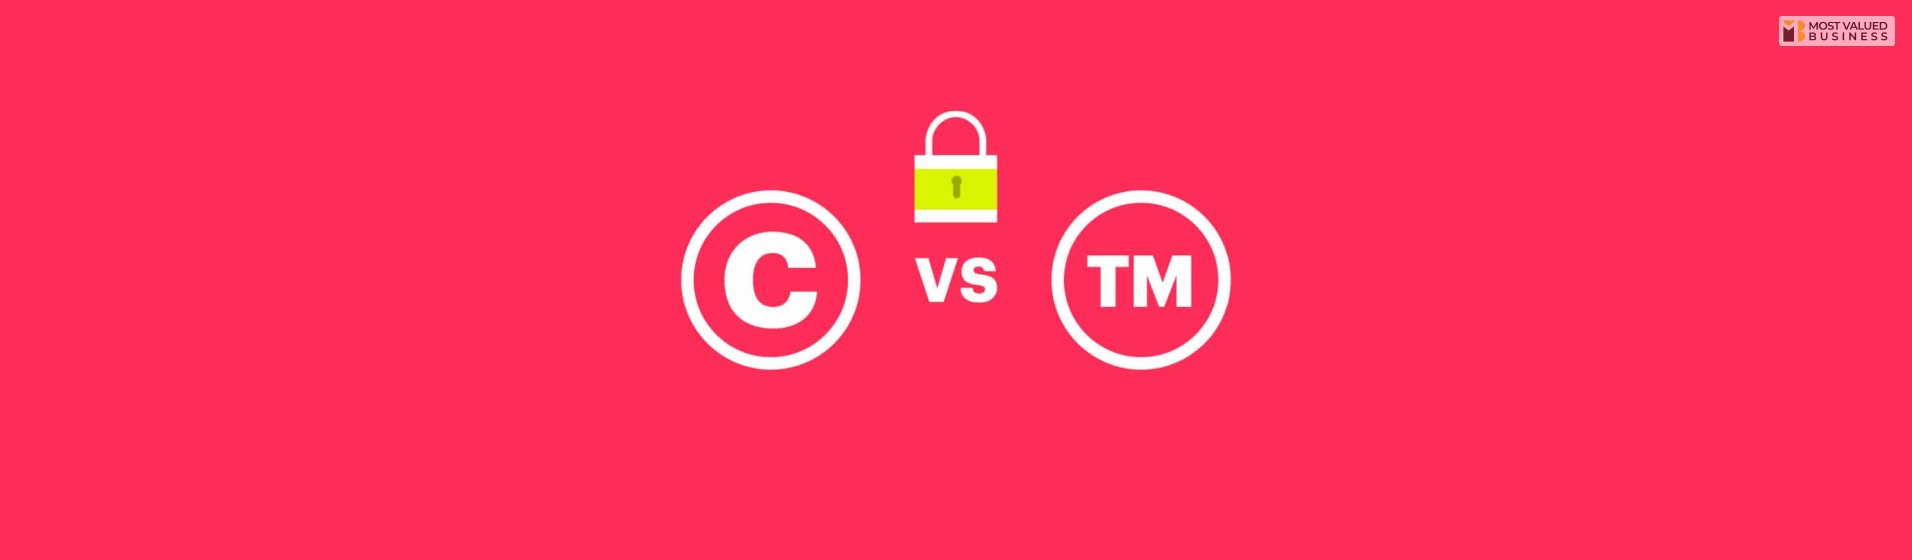 trademark vs copyright